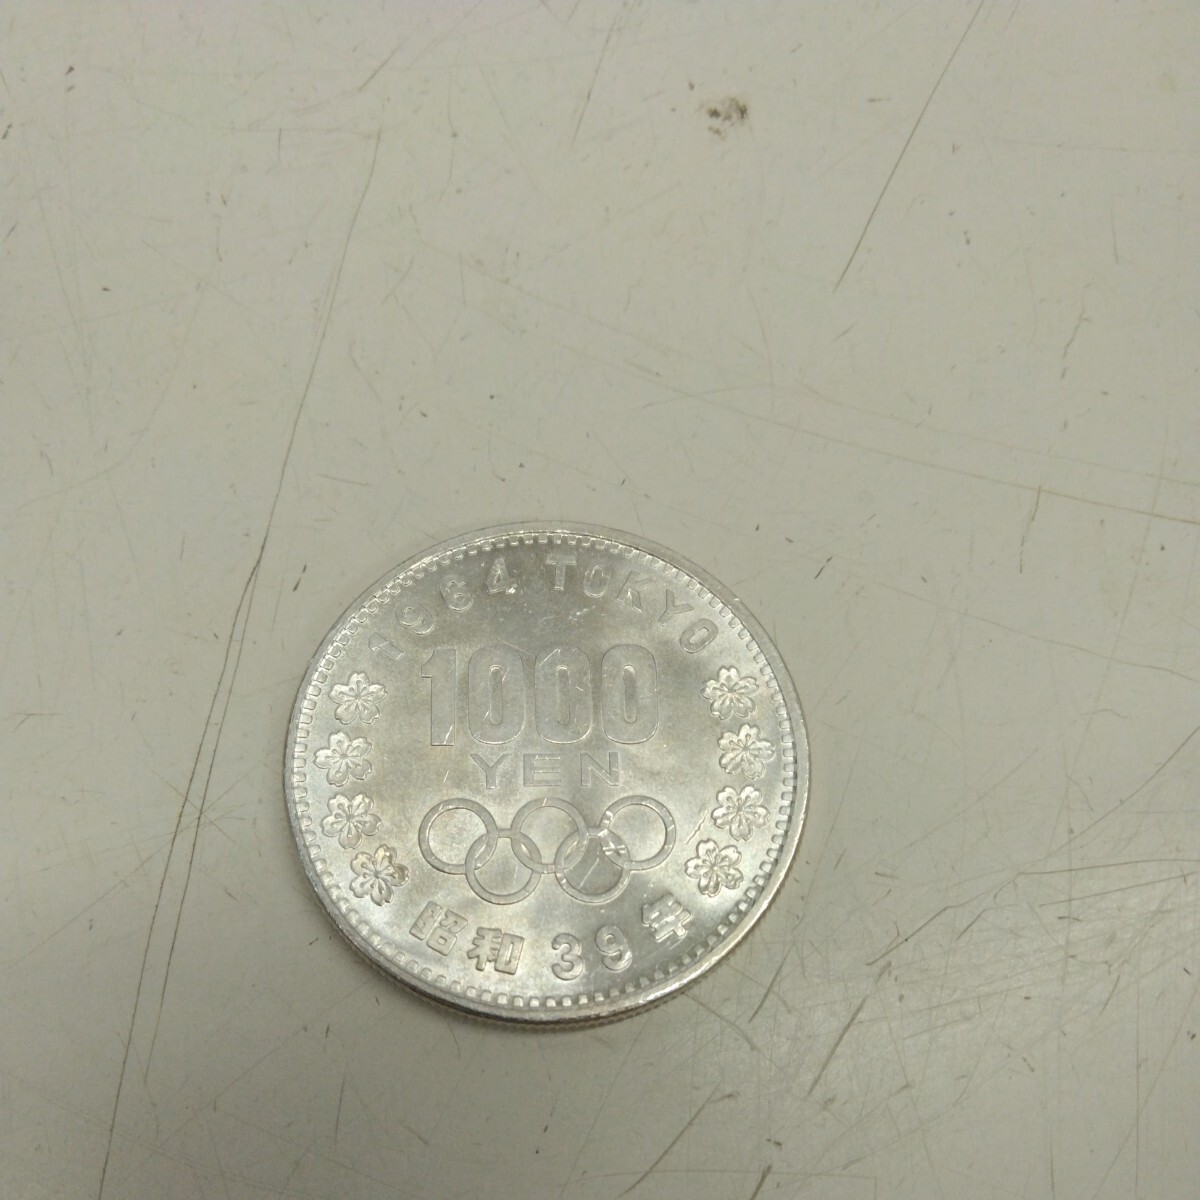 C2755【アンティーク】東京オリンピック千円銀貨1964年_画像1